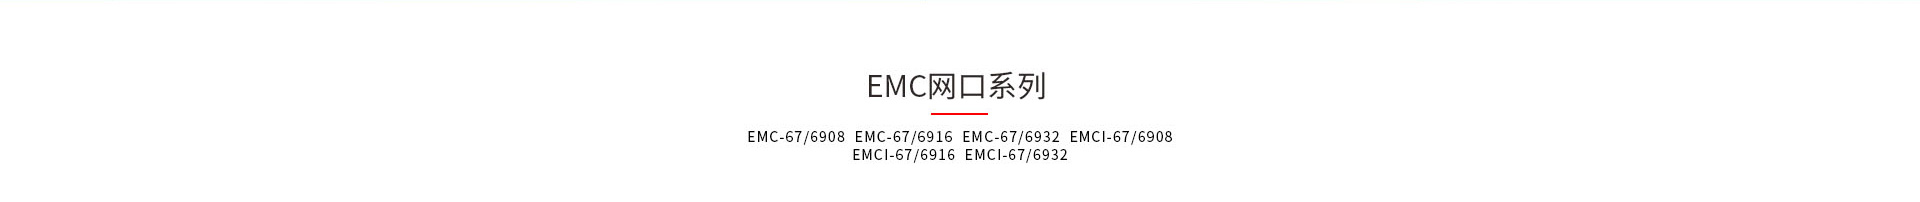 九游会卫士EMC和EMCI系列kvm切换器产品型号大全